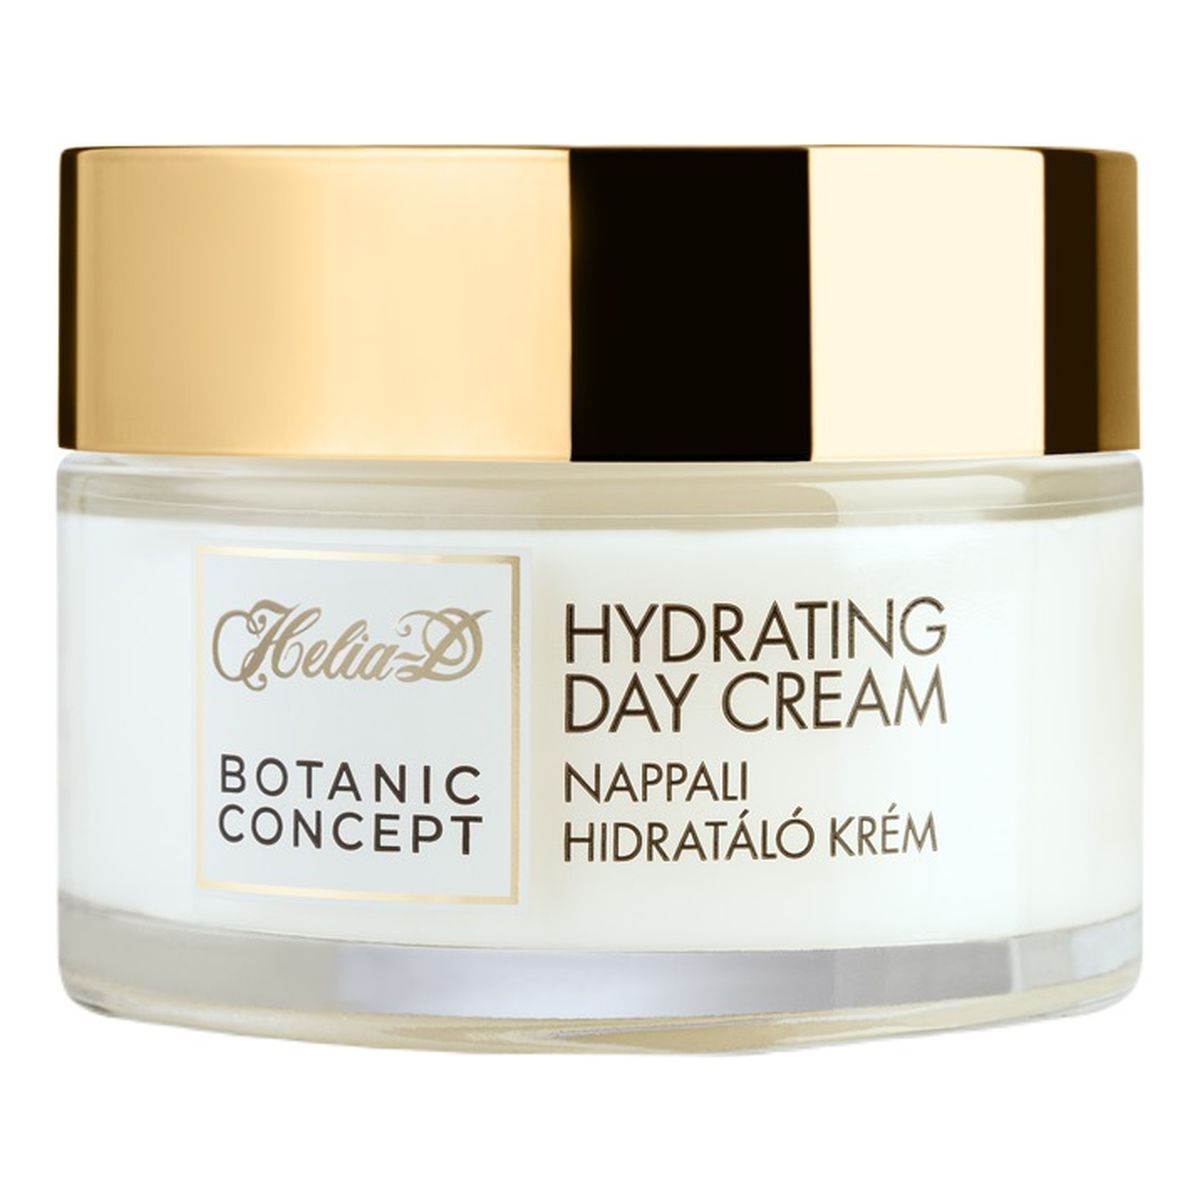 Helia-D Botanic Concept Hydrating Day Cream nawilżający Krem ​​na dzień do cery normalnej/mieszanej 50ml